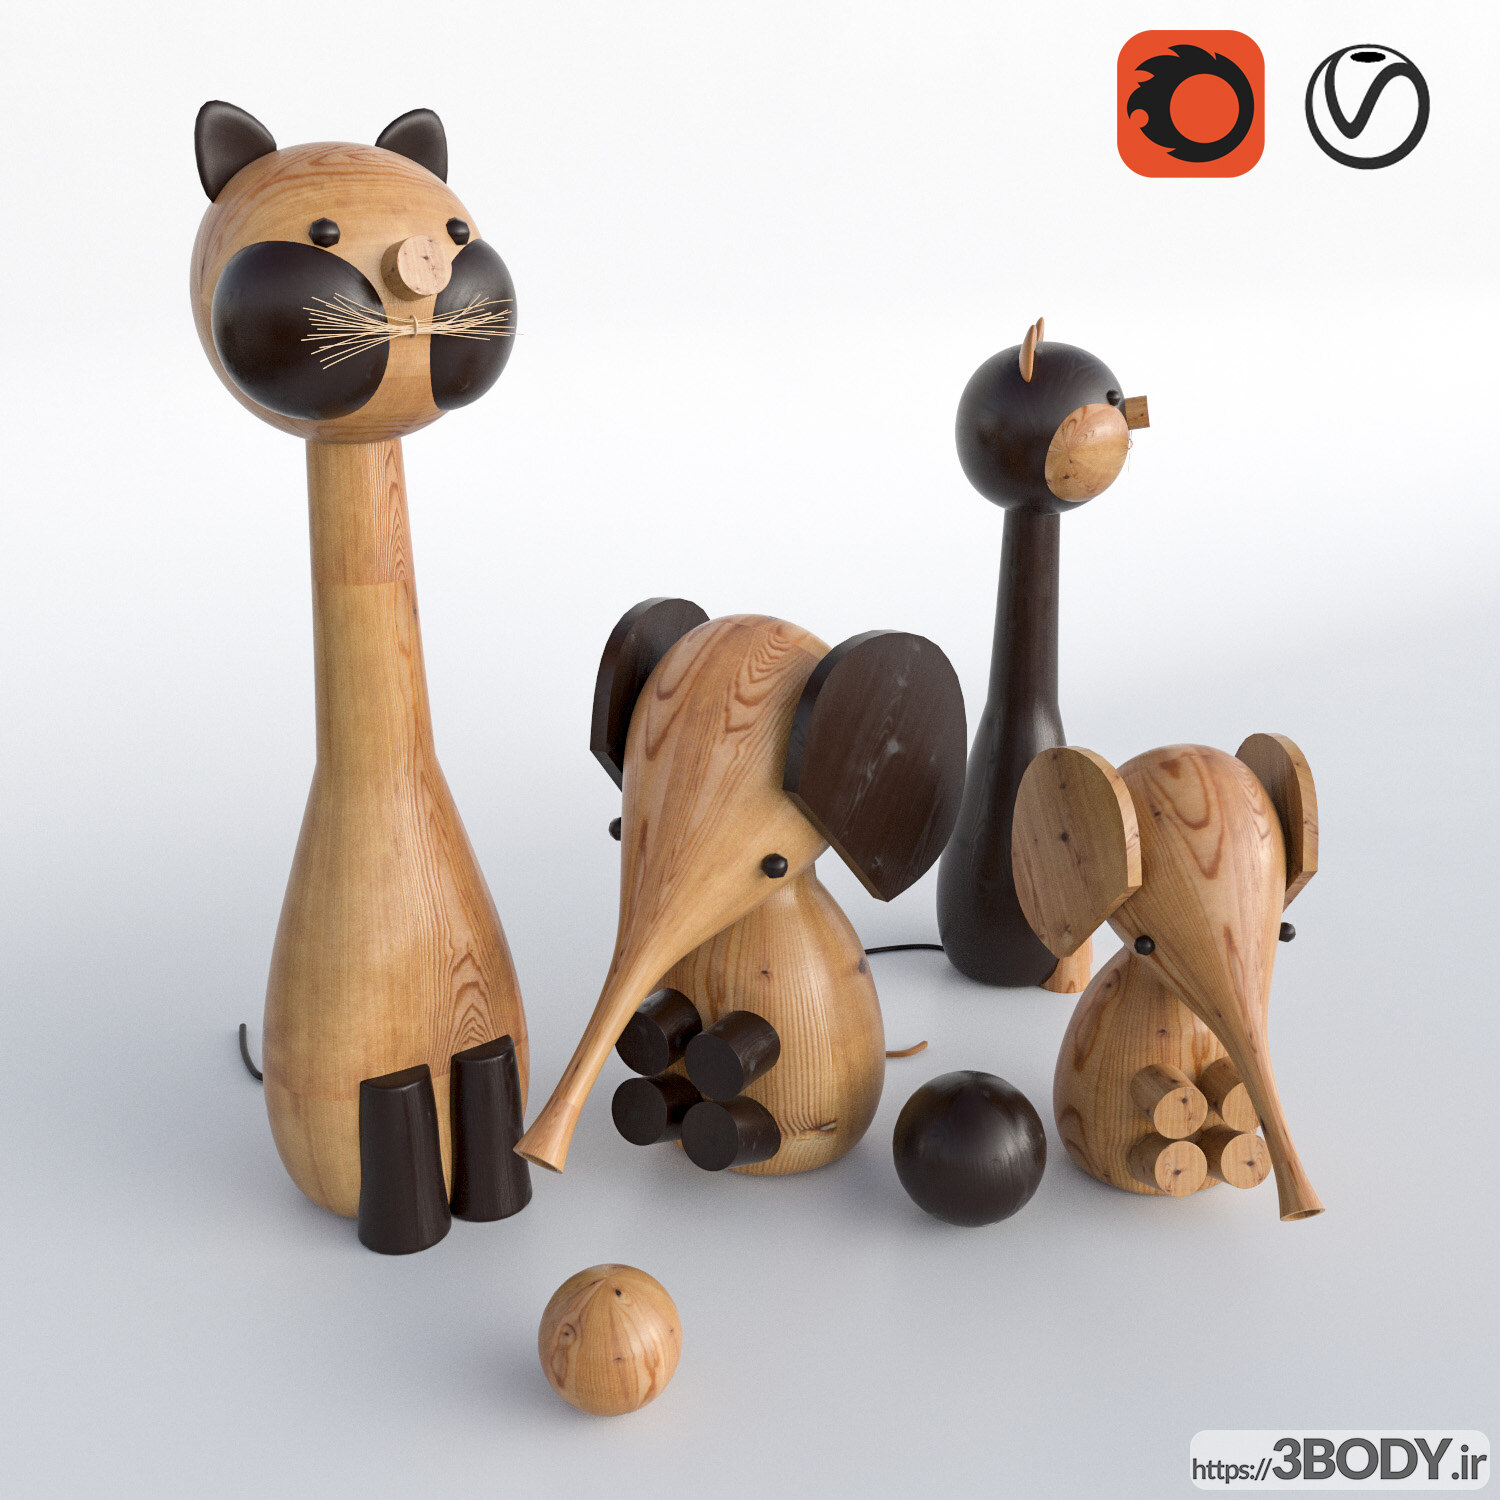 آبجکت سه بعدی اسباب بازی های ساخته شده از چوب عکس 1